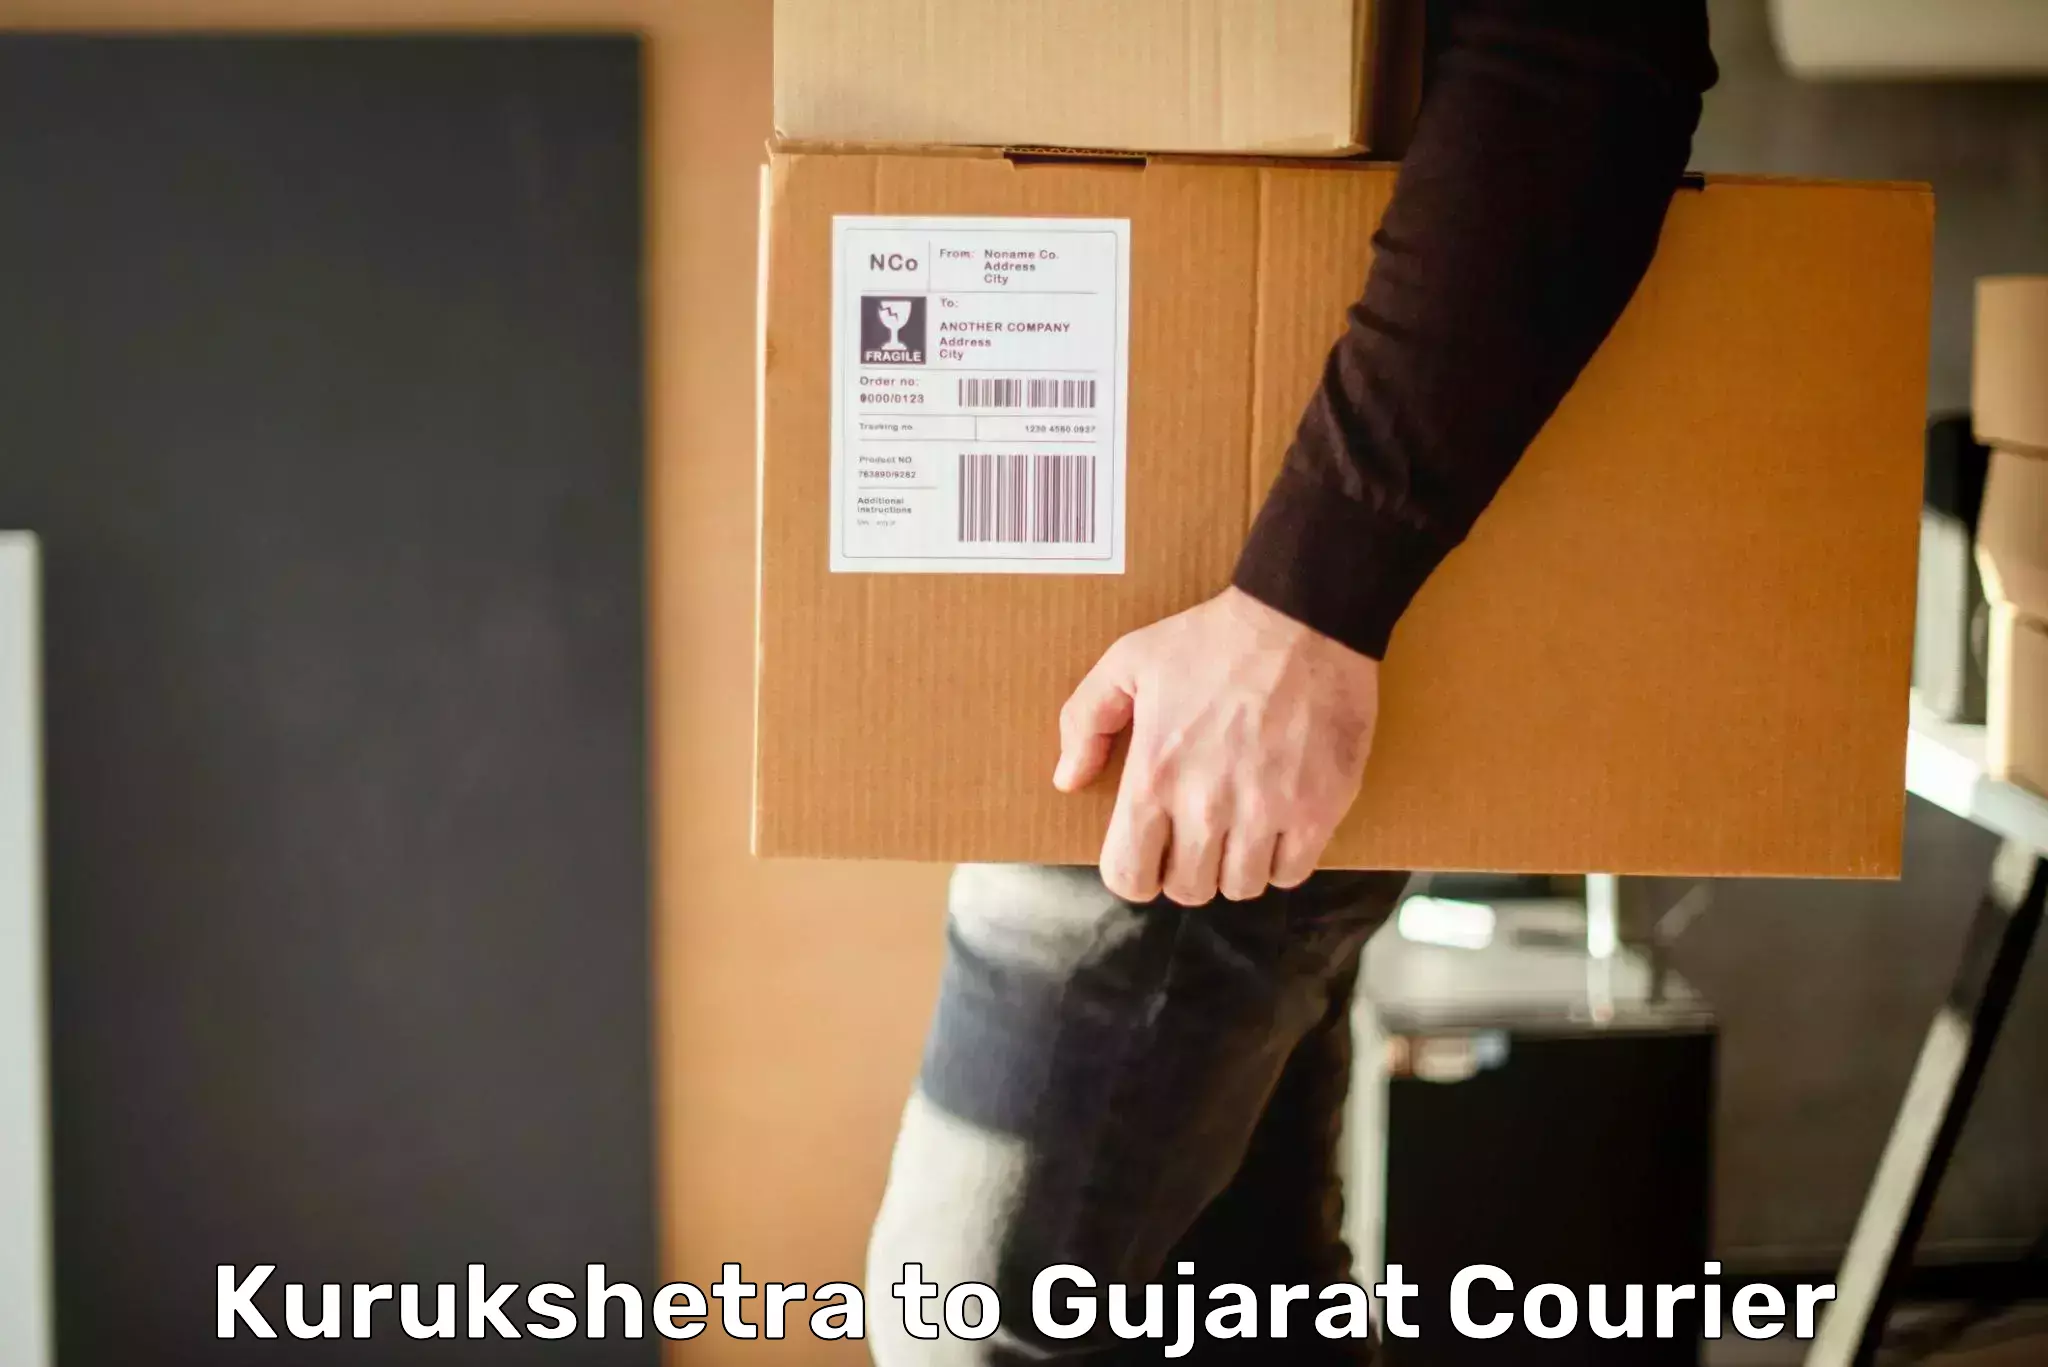 Reliable logistics providers Kurukshetra to Rajkot